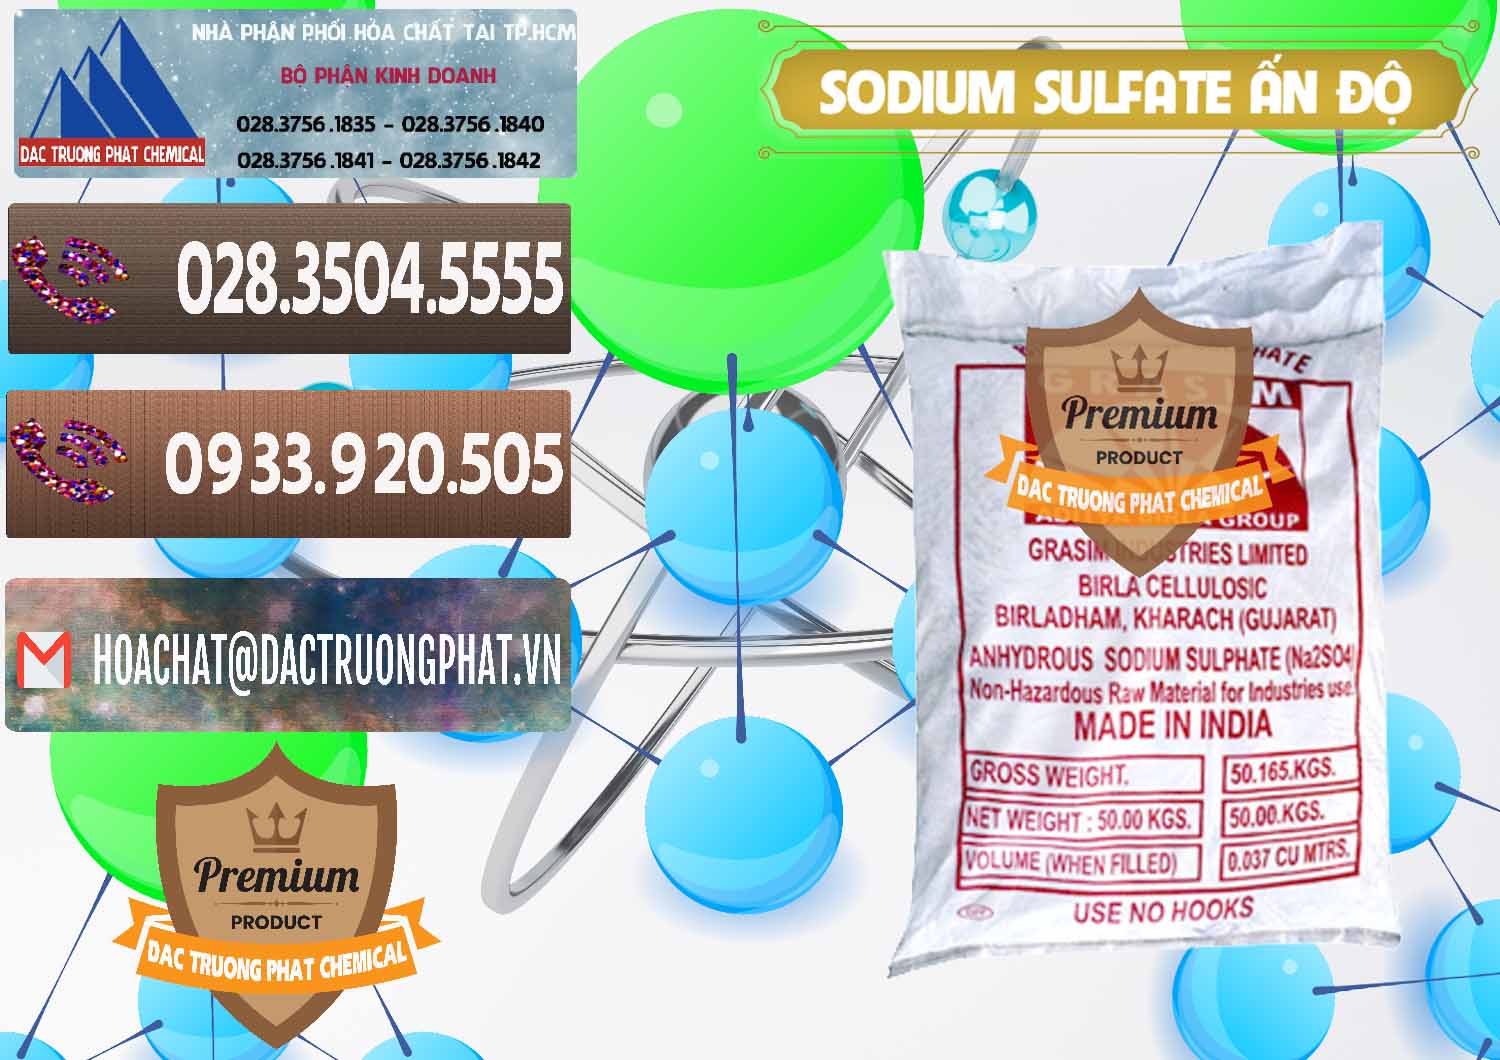 Chuyên bán ( cung ứng ) Sodium Sulphate - Muối Sunfat Na2SO4 Aditya Birla Grasim Ấn Độ India - 0462 - Chuyên phân phối - kinh doanh hóa chất tại TP.HCM - hoachatviet.net